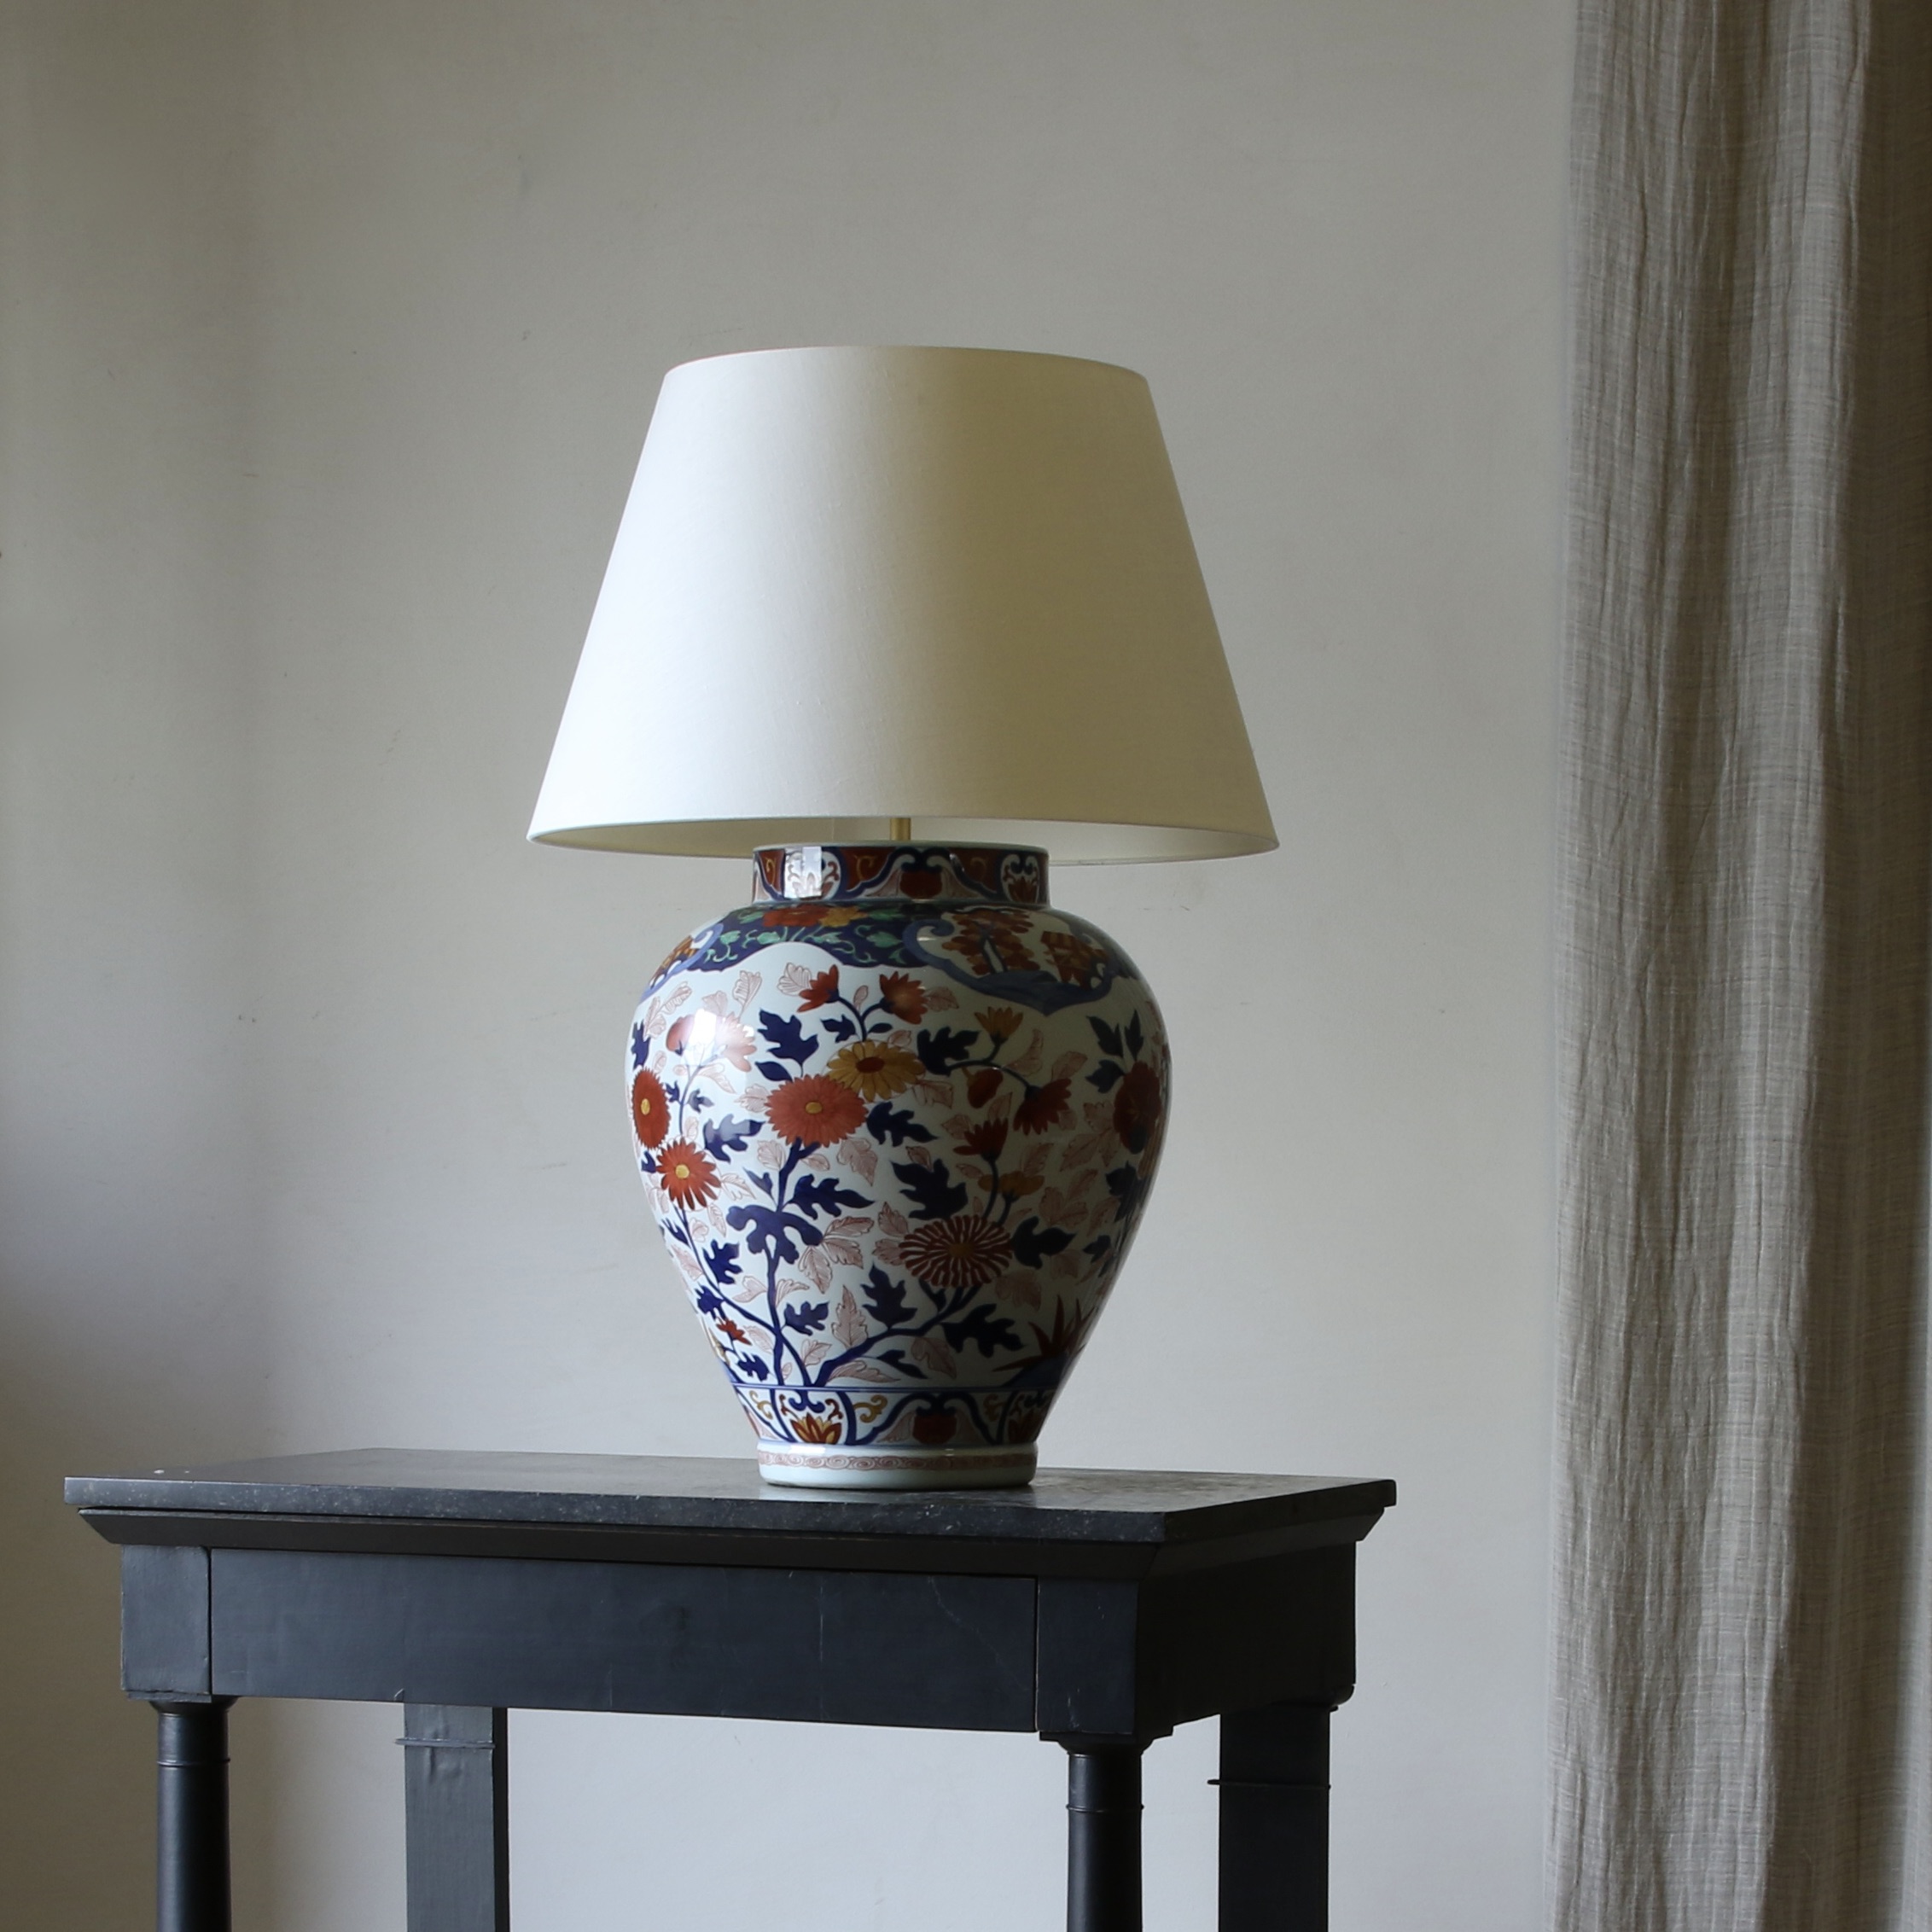 146-31 - Imari Table Lamp by Vaughan Designs